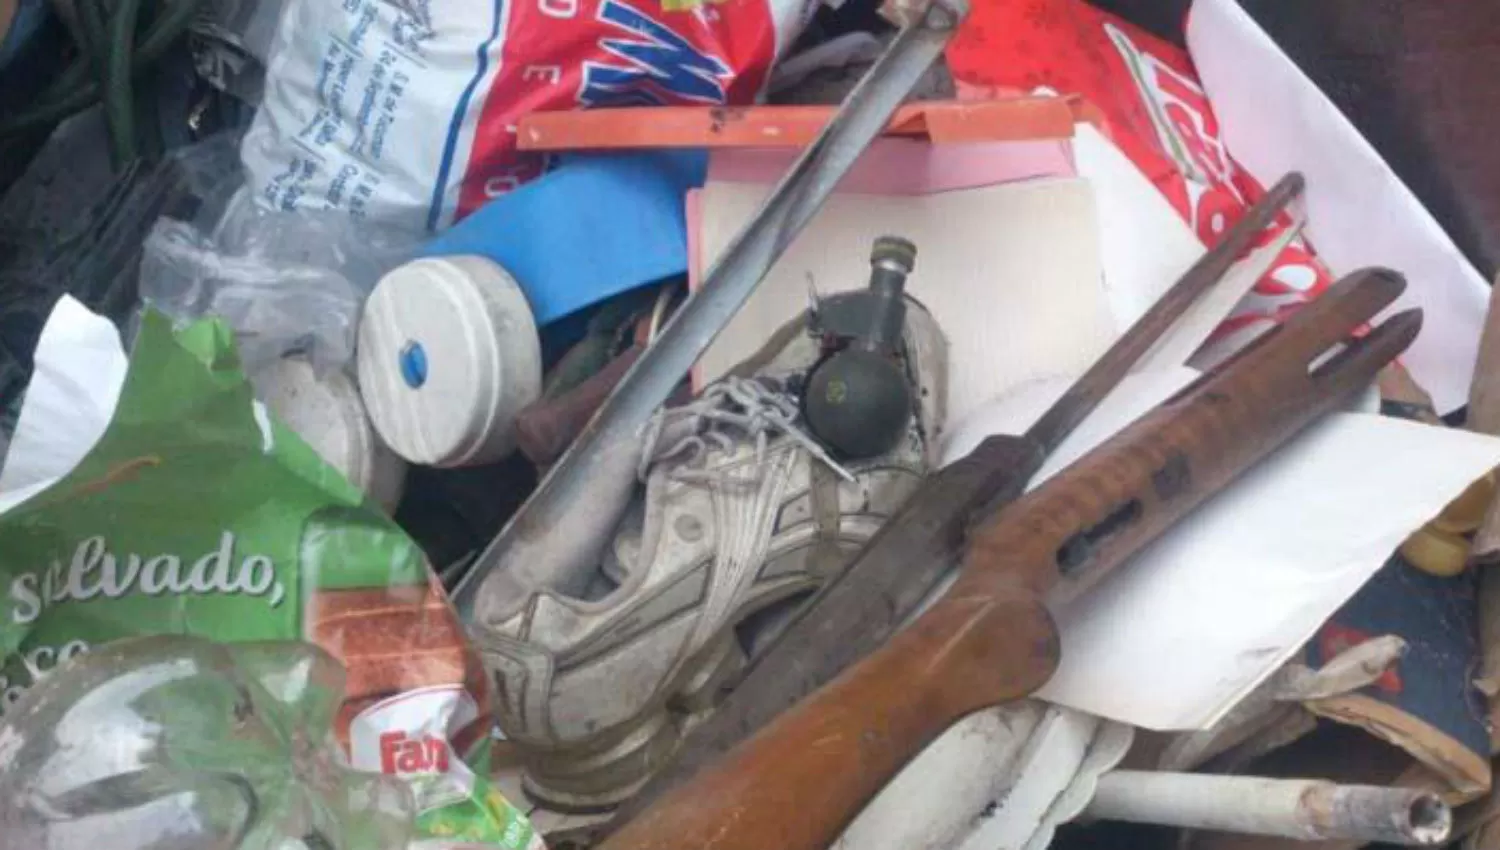 ENTRE LA BASURA. La granada fue encontrada por un empleado de la Municipalidad de Concepción. FOTO DE PRIMERAFUENTE.COM.AR